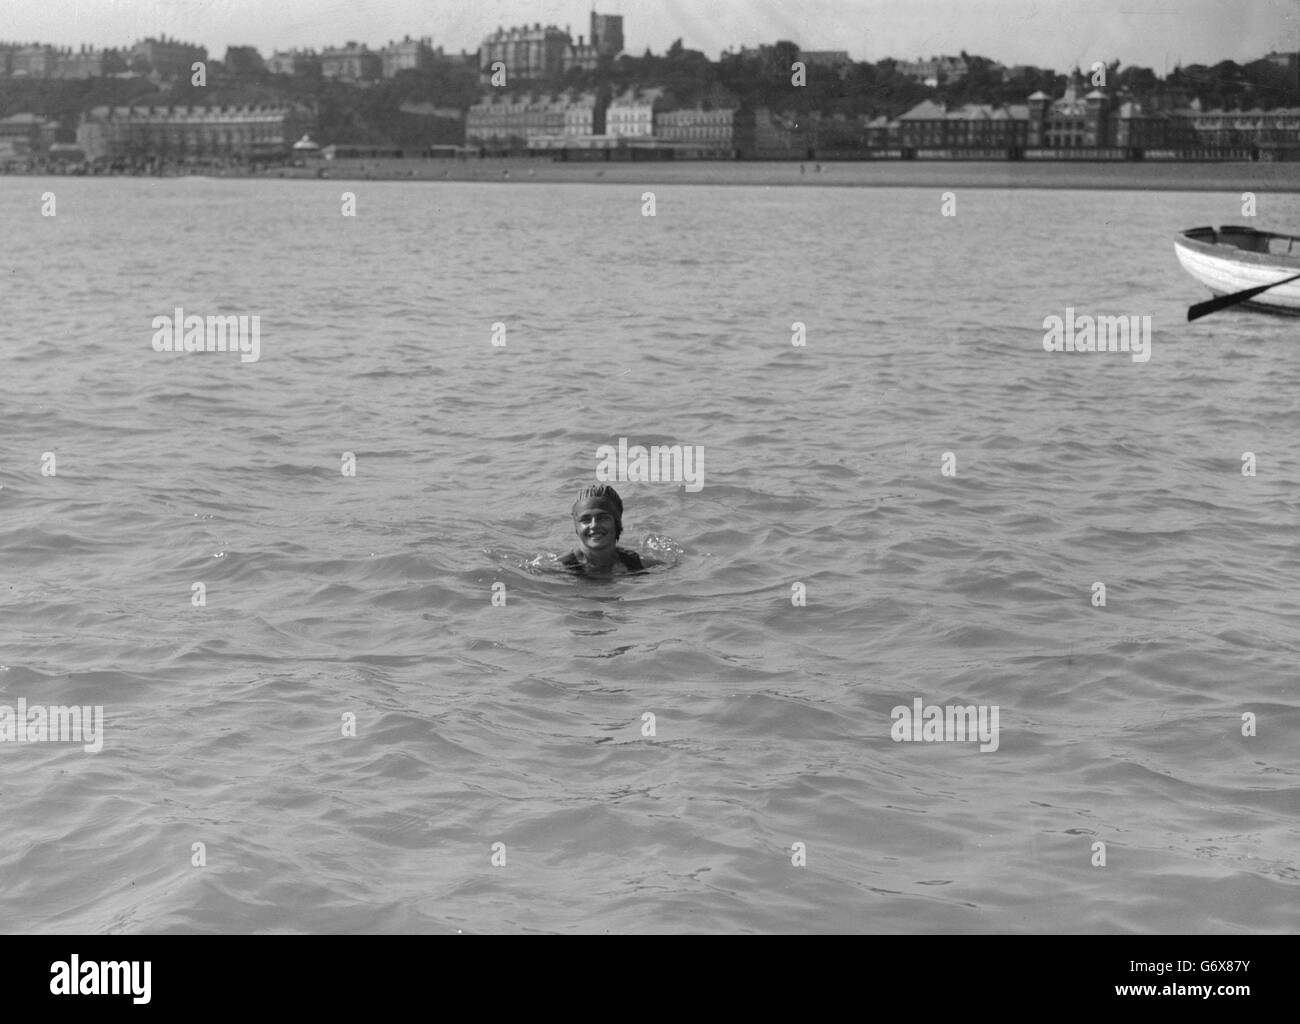 Miss Mercedes Gleitz startet in Folkstone, um den Kanal zu schwimmen. Stockfoto